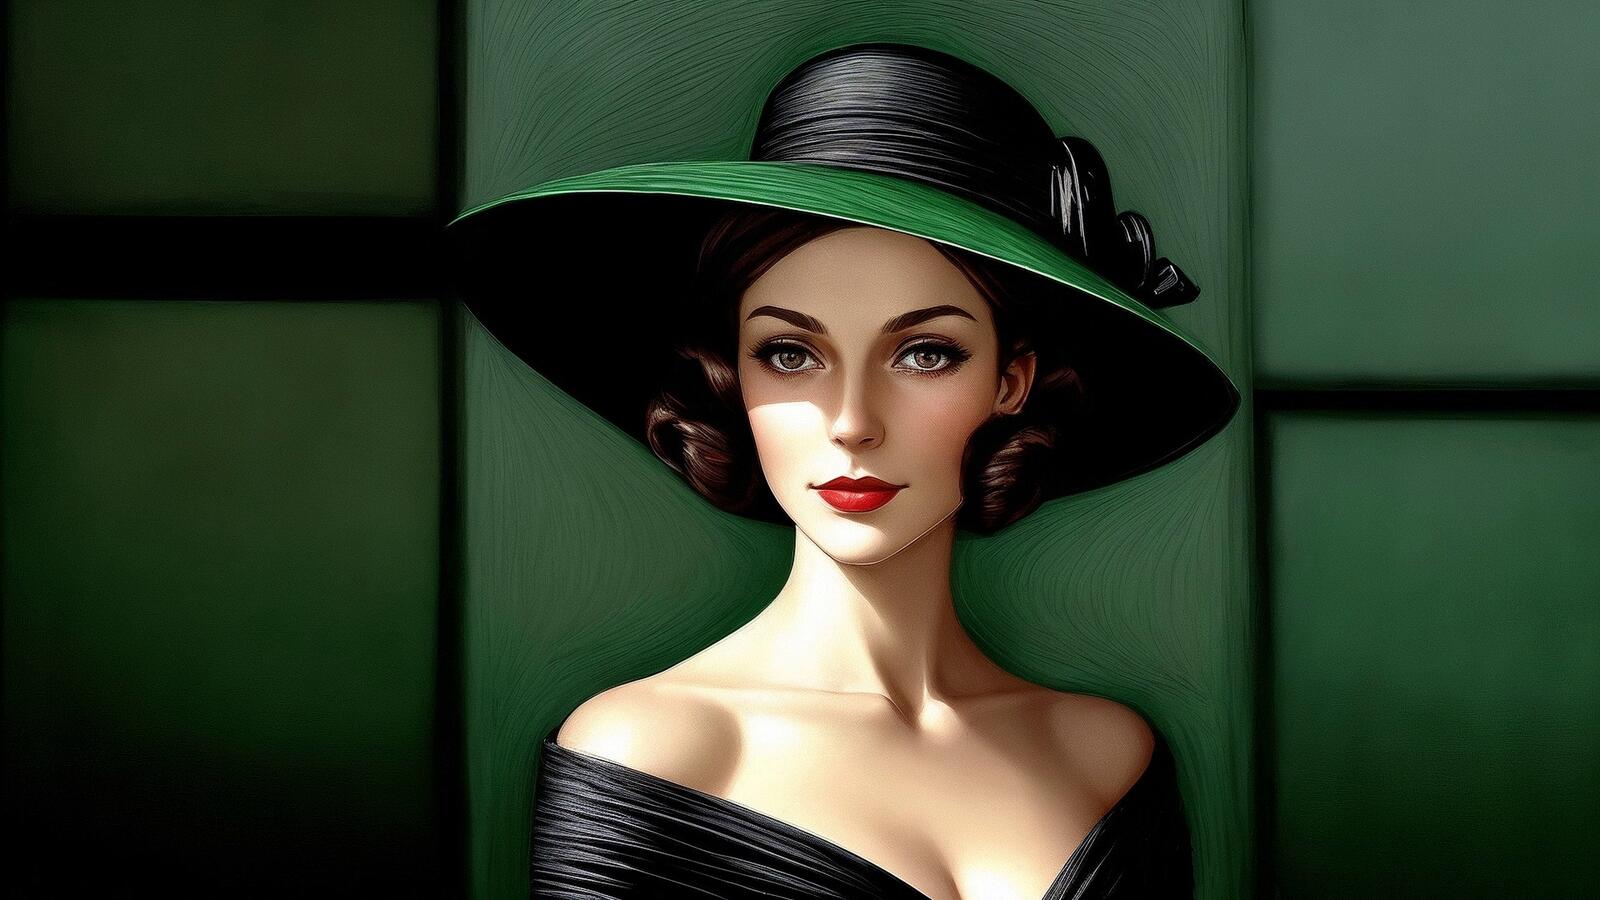 Бесплатное фото Рисунок портрет женщины в шляпе на зеленом фоне